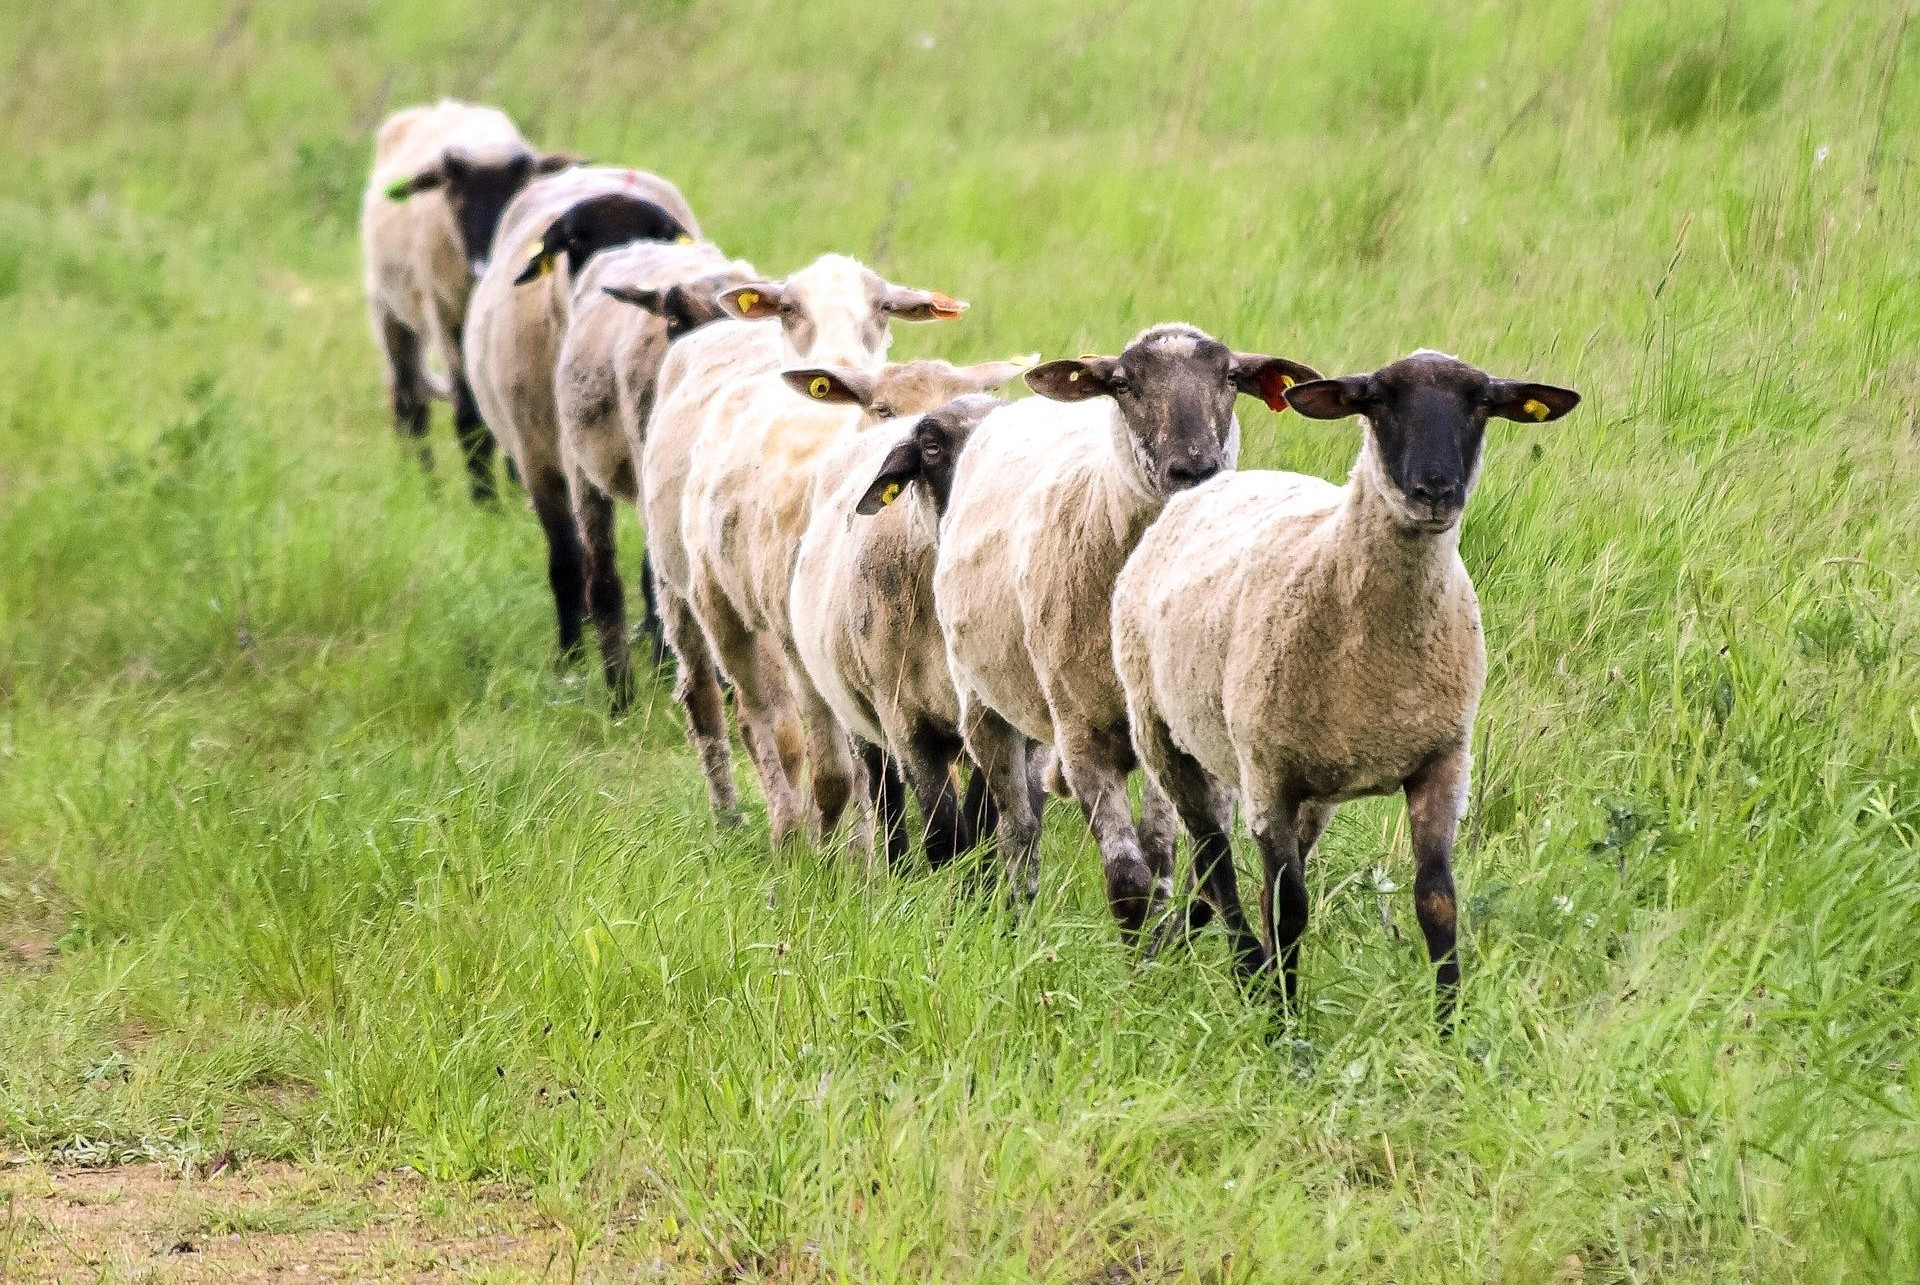 NEŠTO IH JE ZAPOSELO! 80 OVACA IZVRŠILO MASOVNO SAMOUBISTVO: Pastir nemoćno gledao kako se bacaju sa litice!